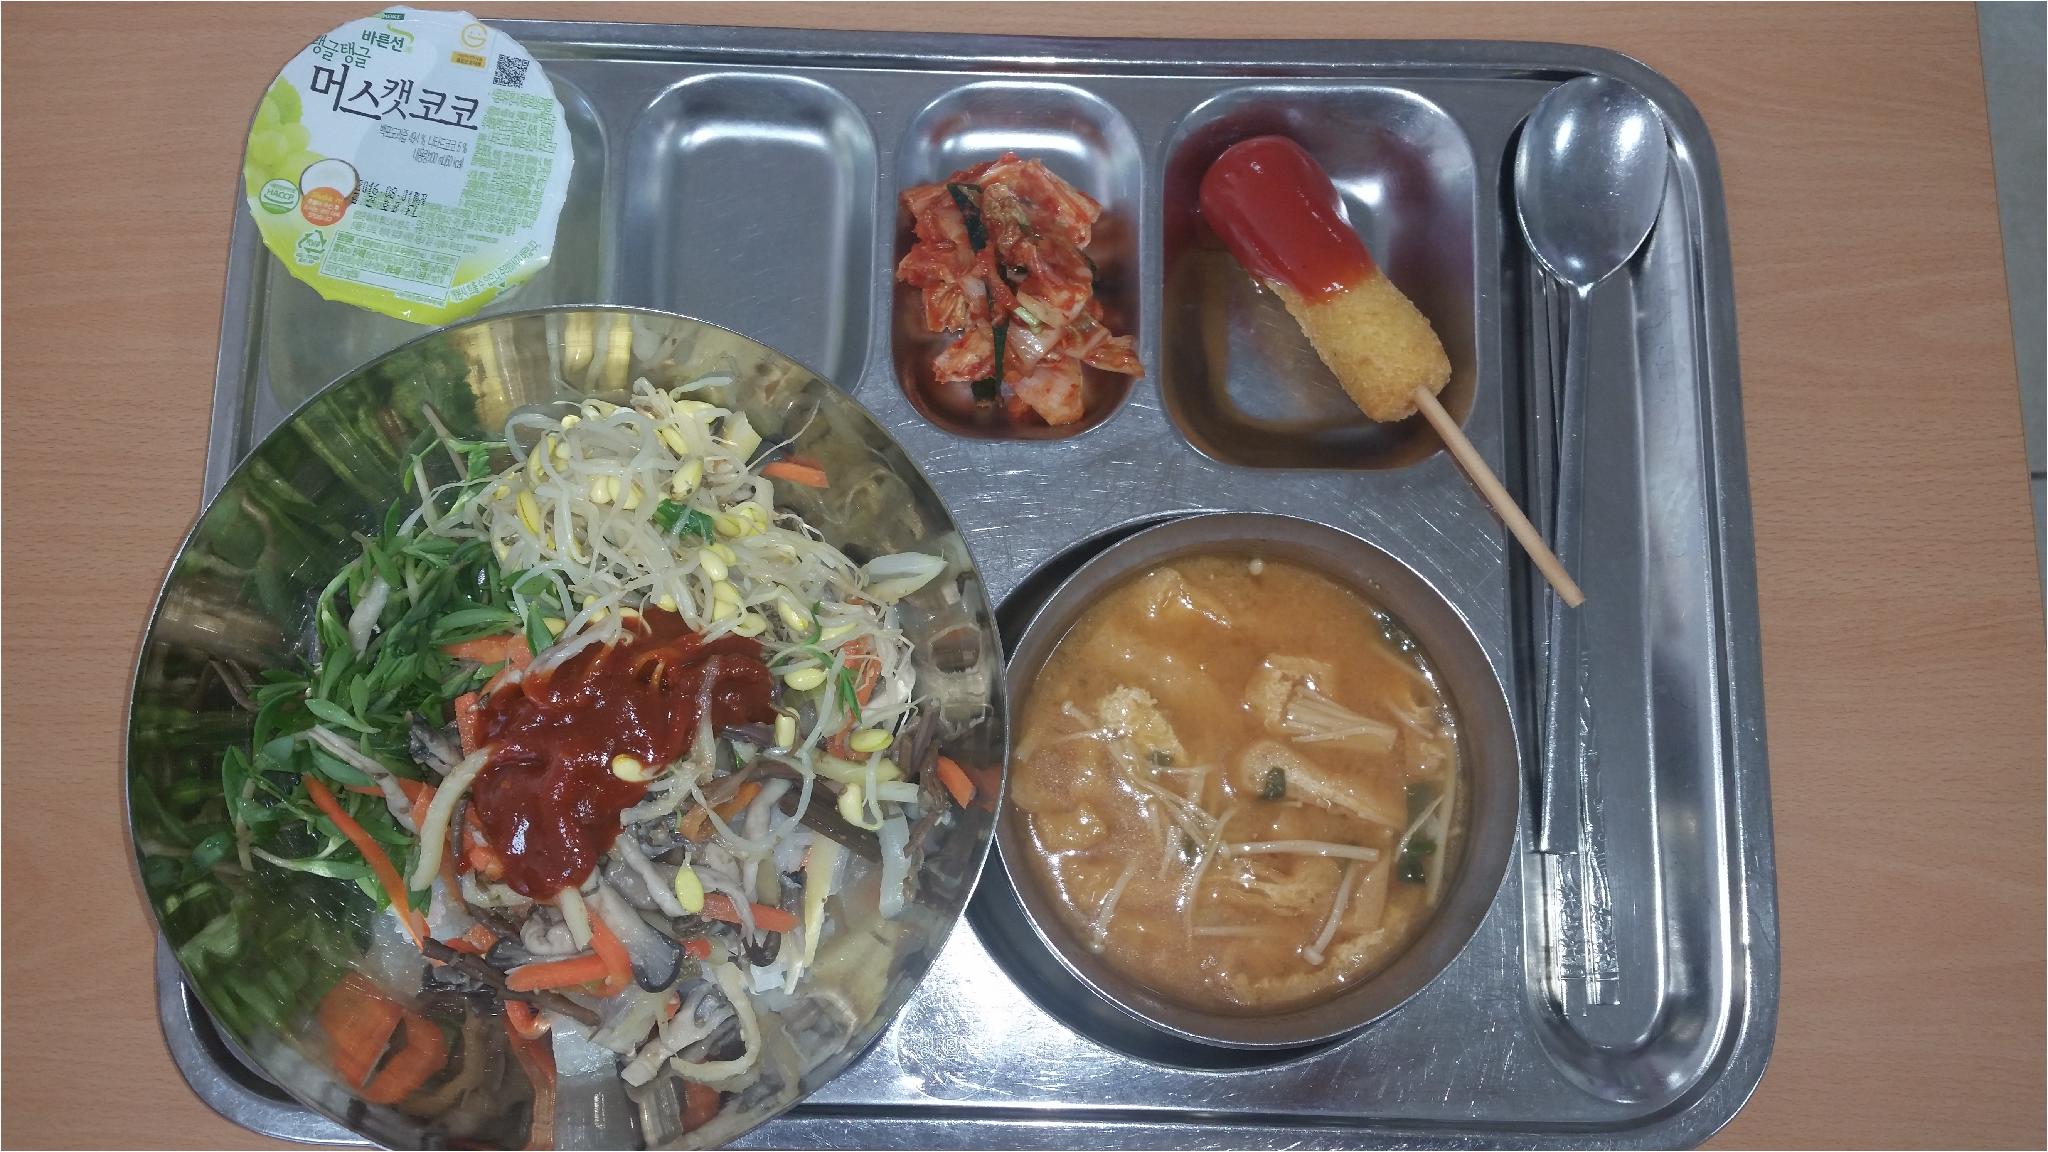 5월11일 중식 봄나물비빔밥/약고추장, 유부팽이된장국, 떡핫도그/케첩, 배추김치, 머스캣코코